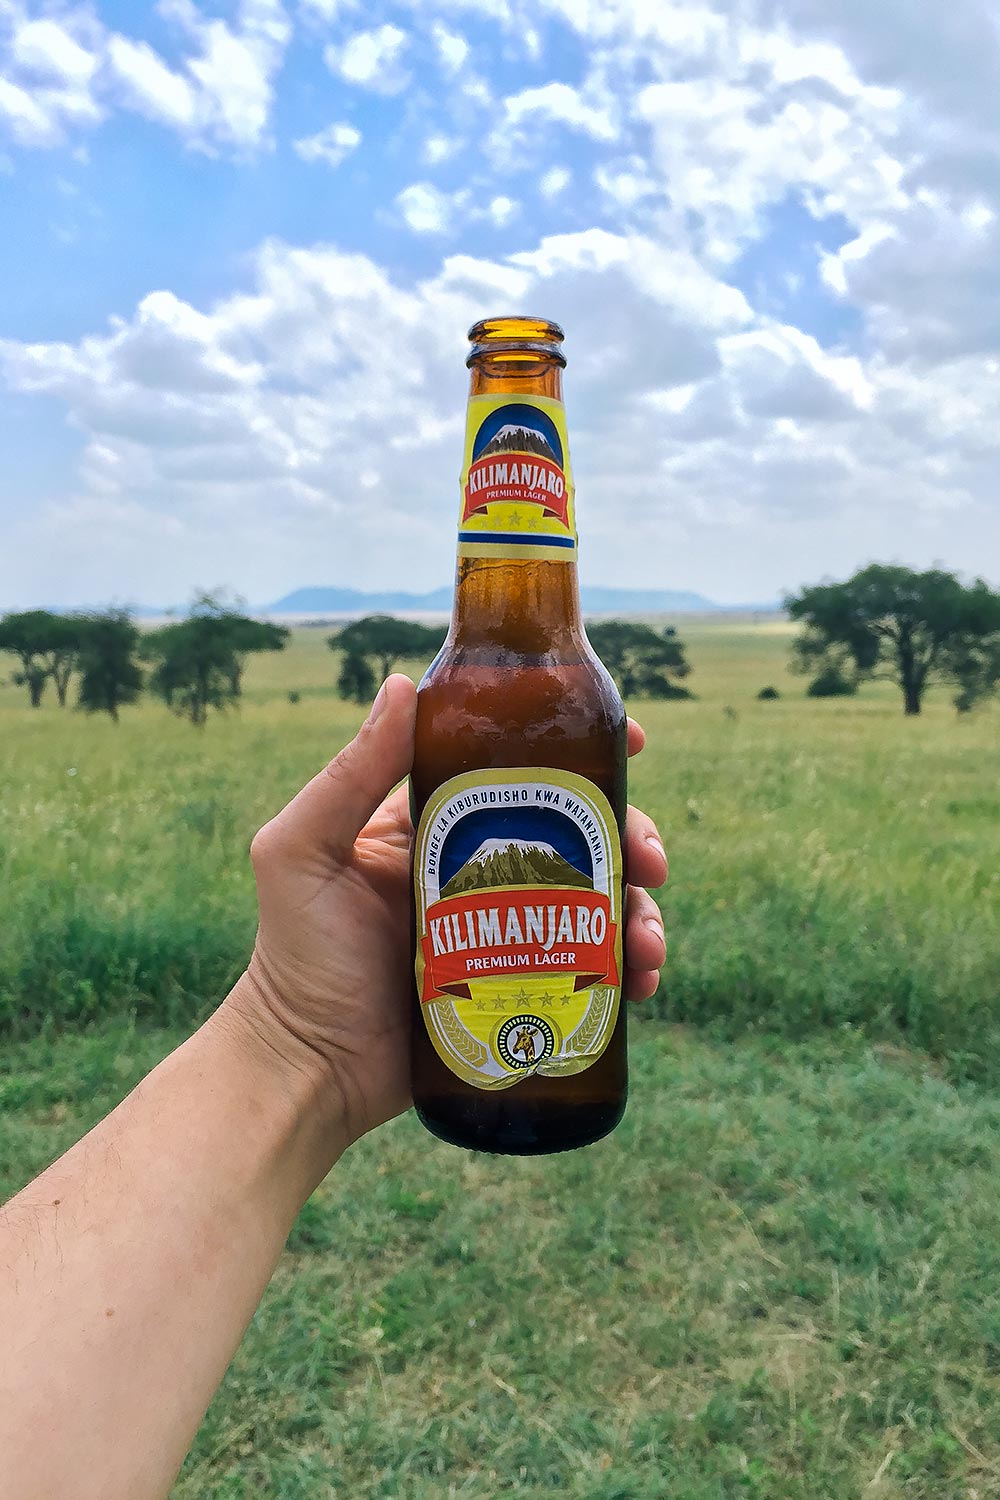 Kilimanjaro Premium Lager Beer